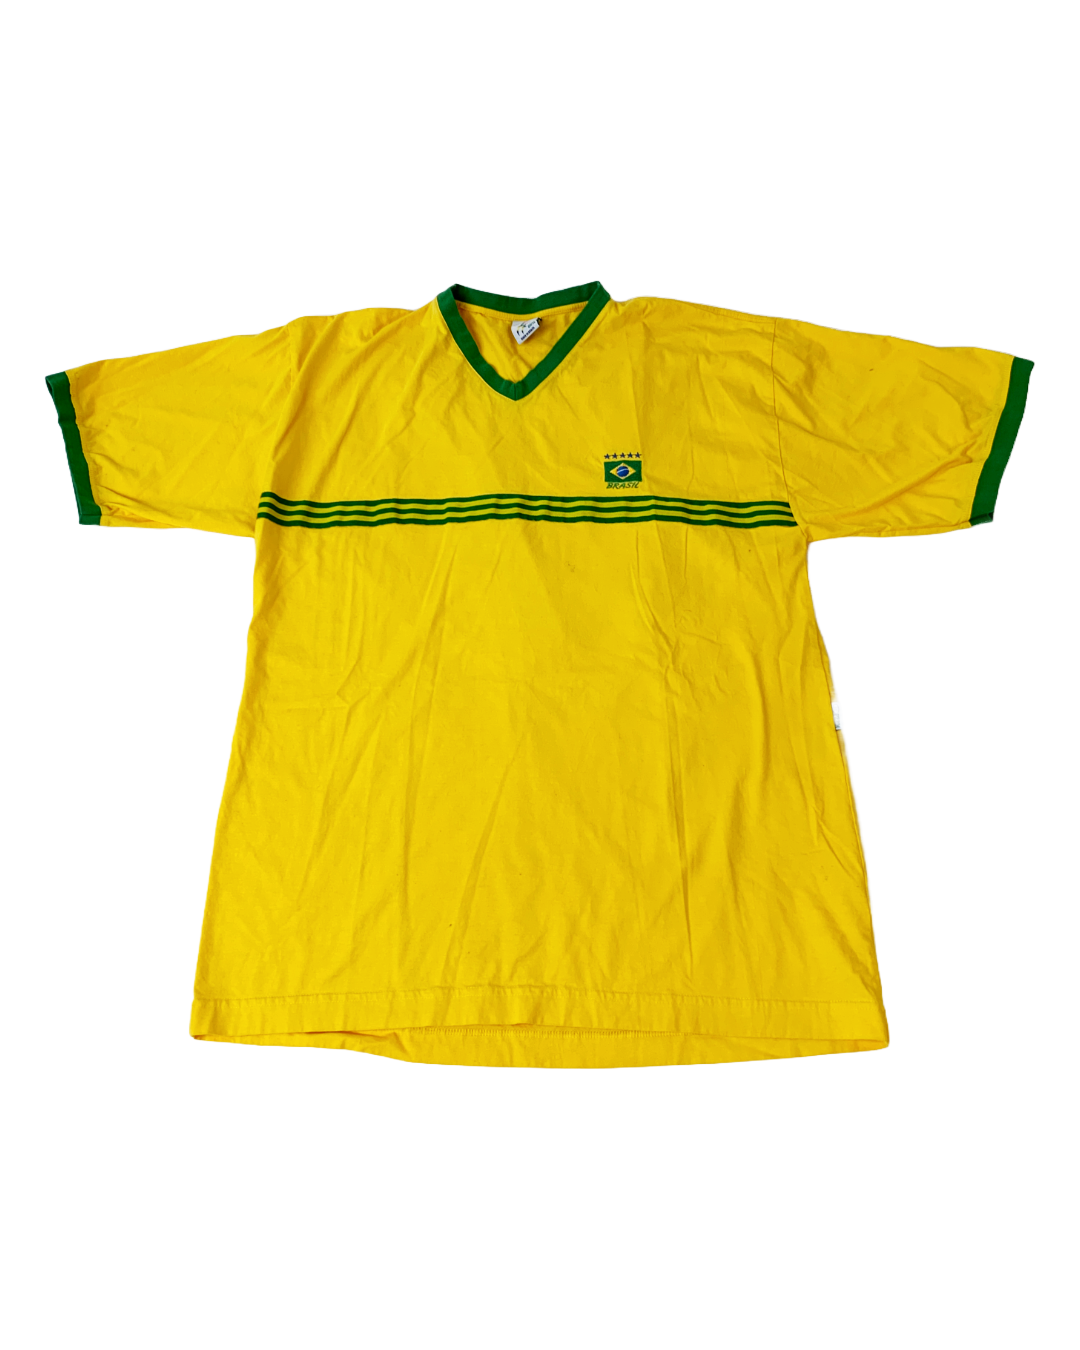 Brazil Vintage Jersey - L